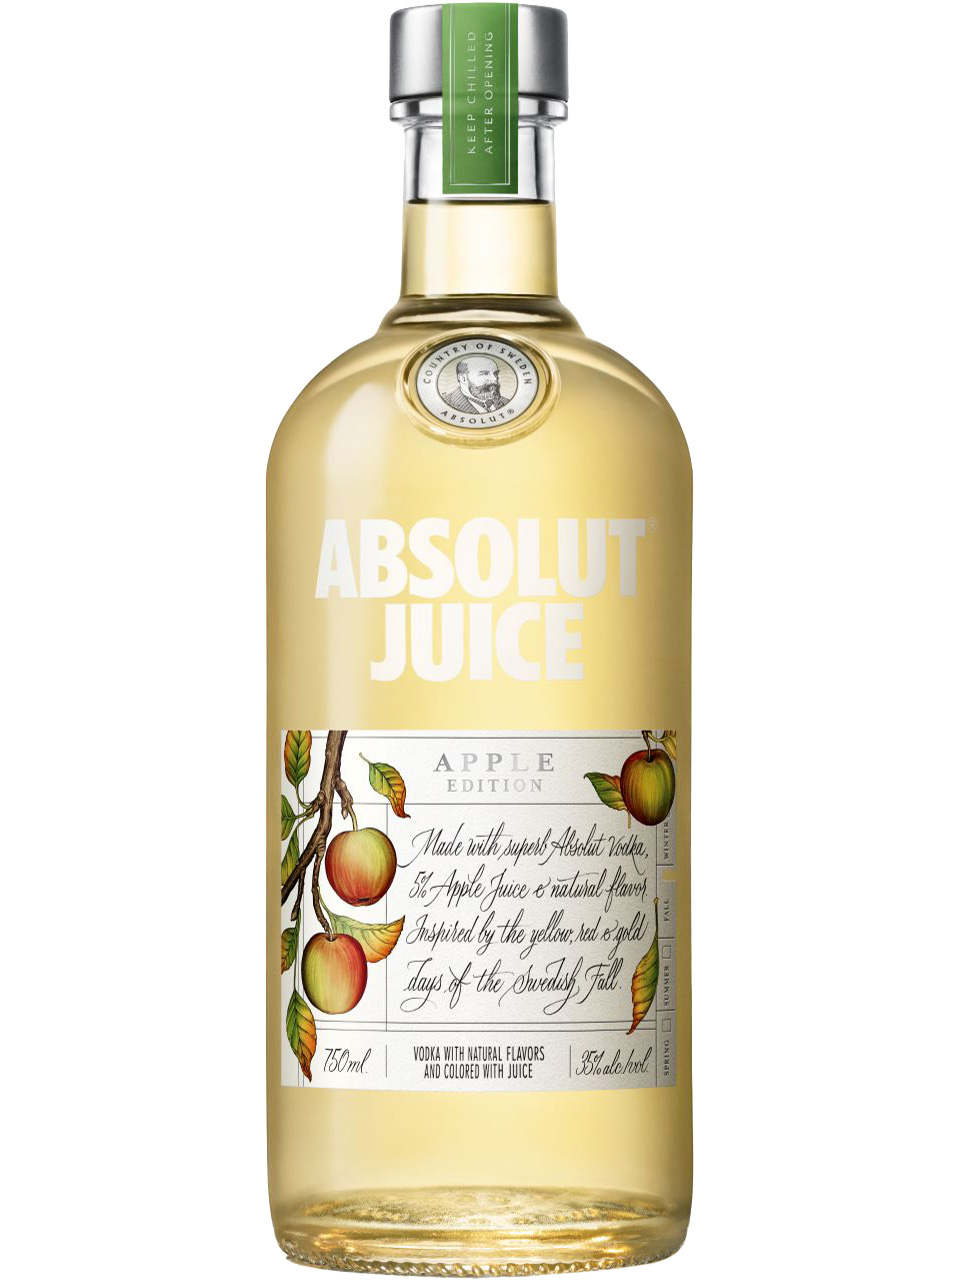 Absolut Juice Apple Edition Vodka